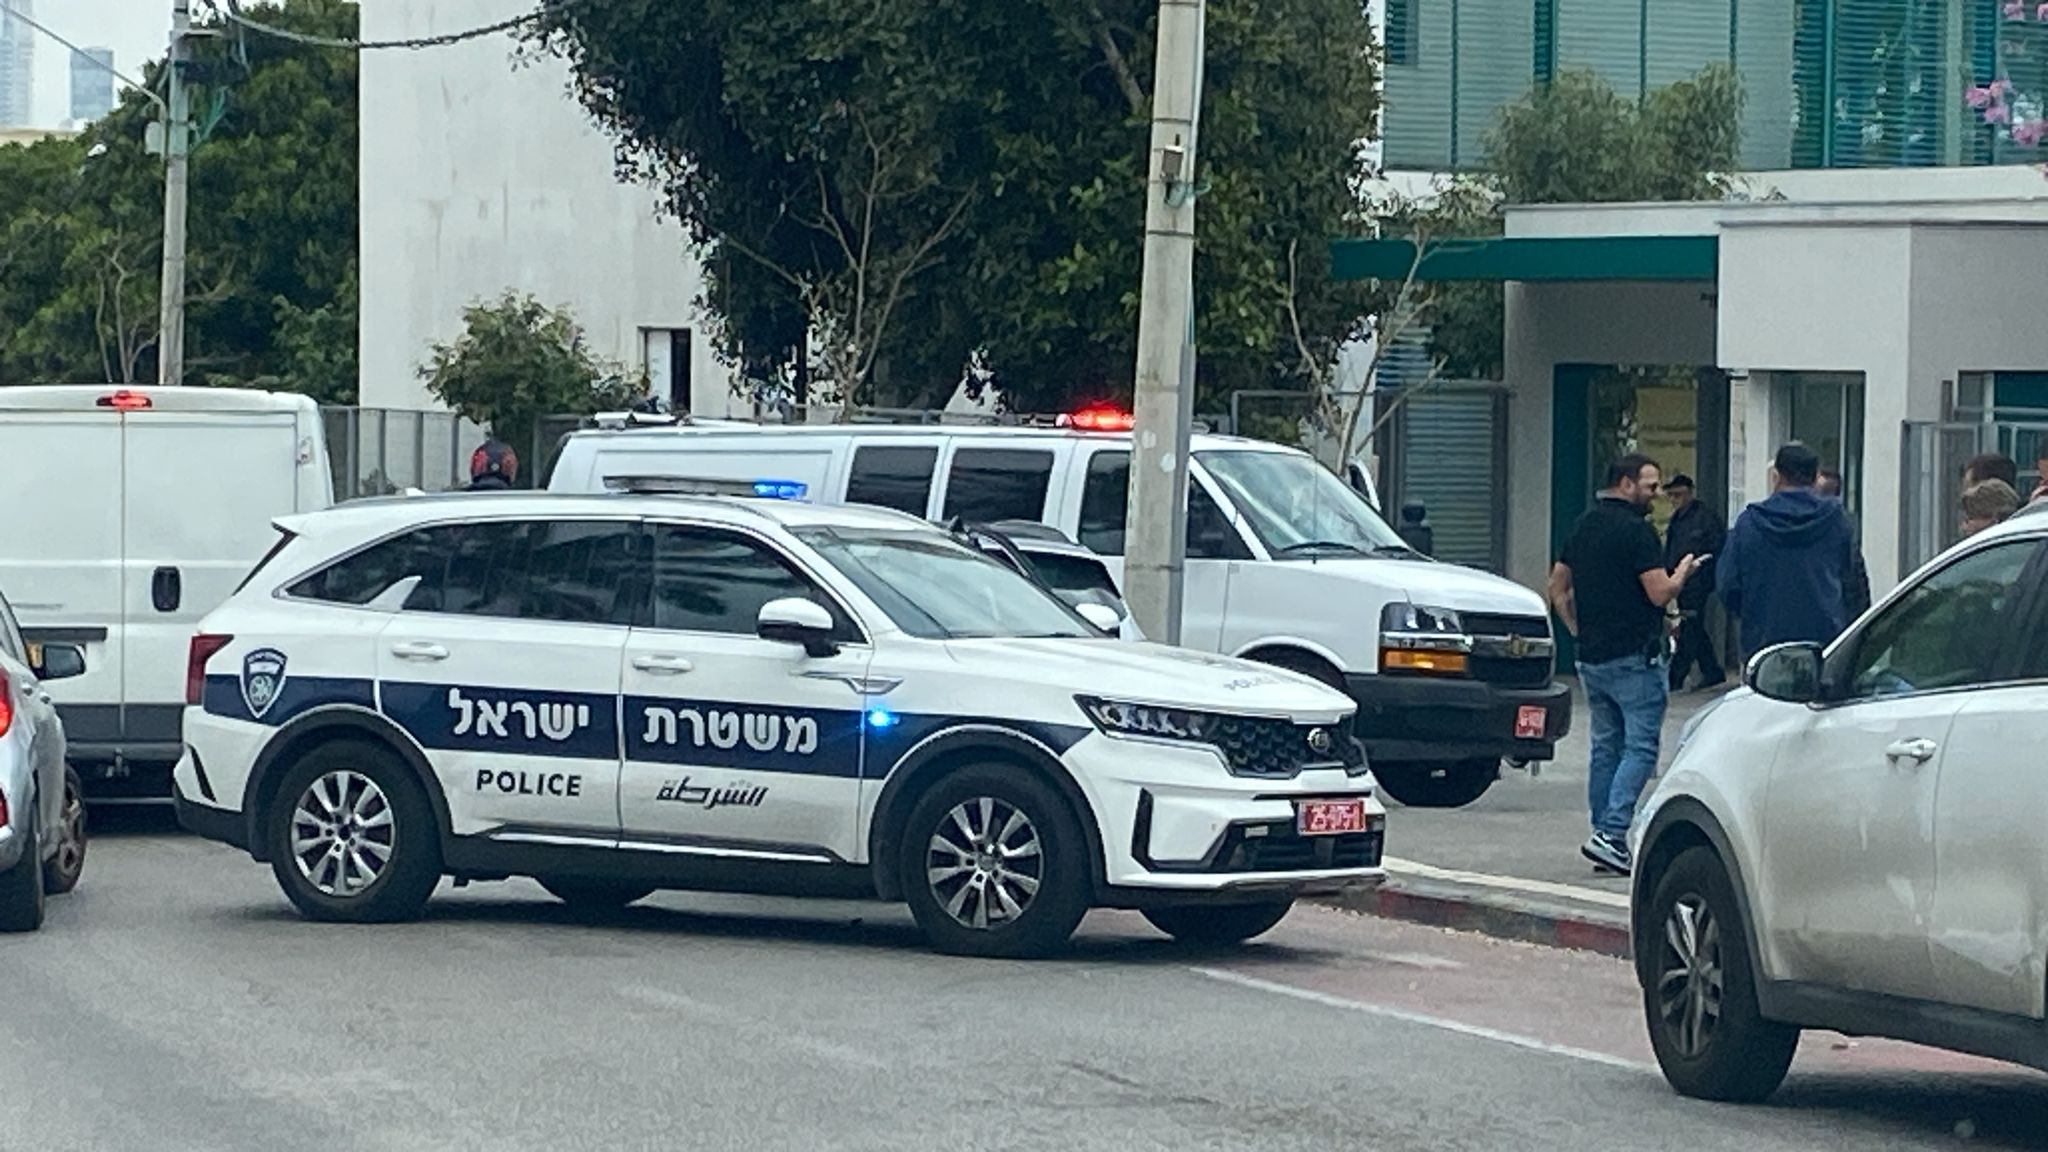 اغلاق شارع شيفتي يسرائيل بعد القاء قنبلة يدوية 